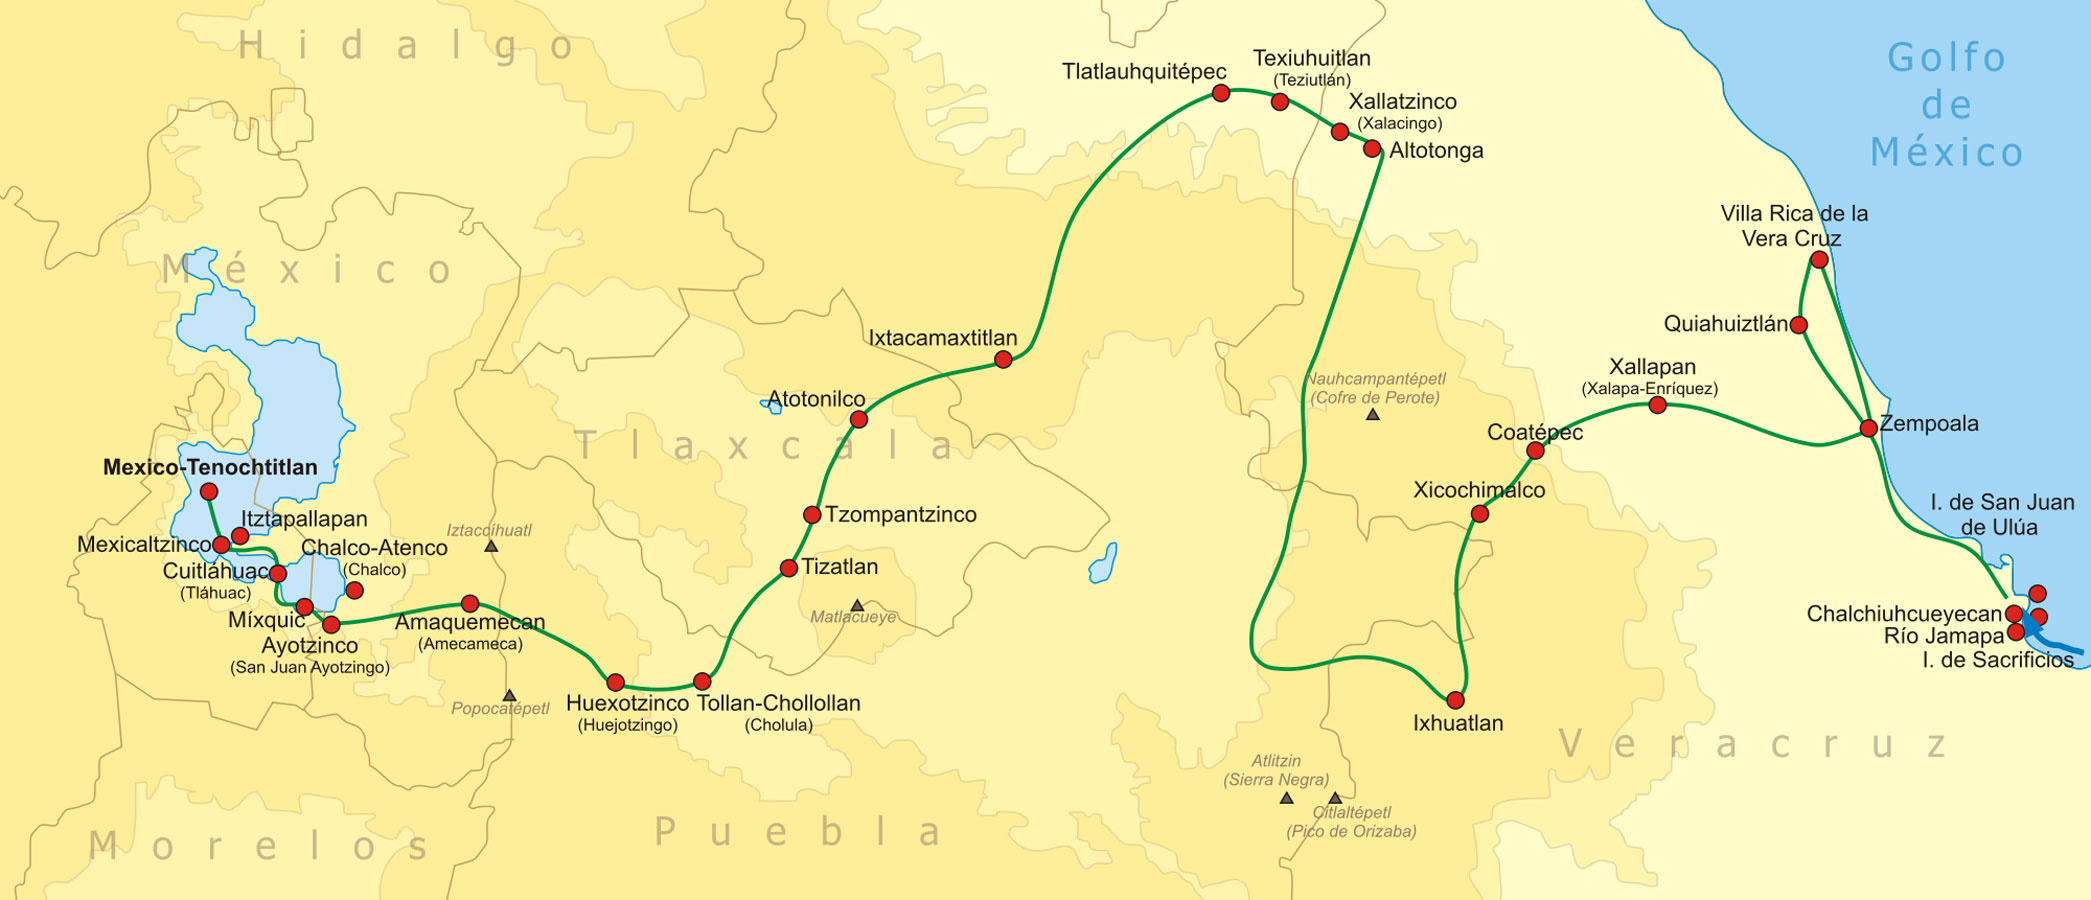 Ruta seguida por Cortés y sus aliados desde la costa de Chalchiuhcueyecan hasta México-Tenochtitlán en 1519. 